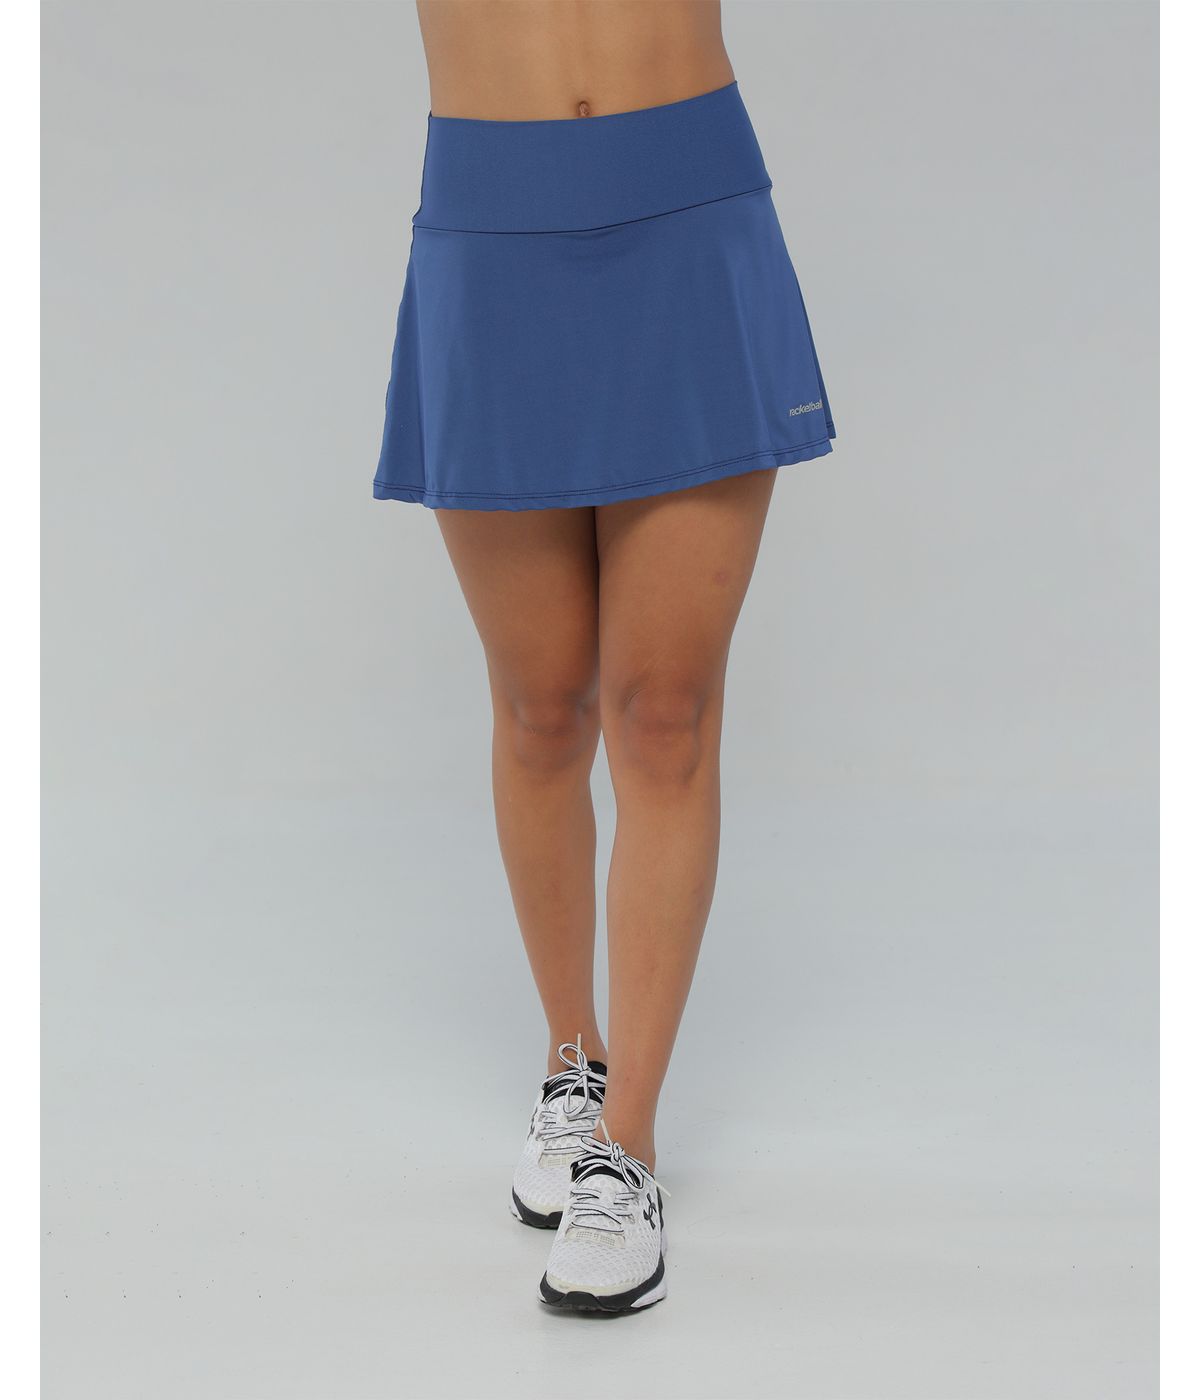 Falda deportiva para mujer, con licra interior, color azul